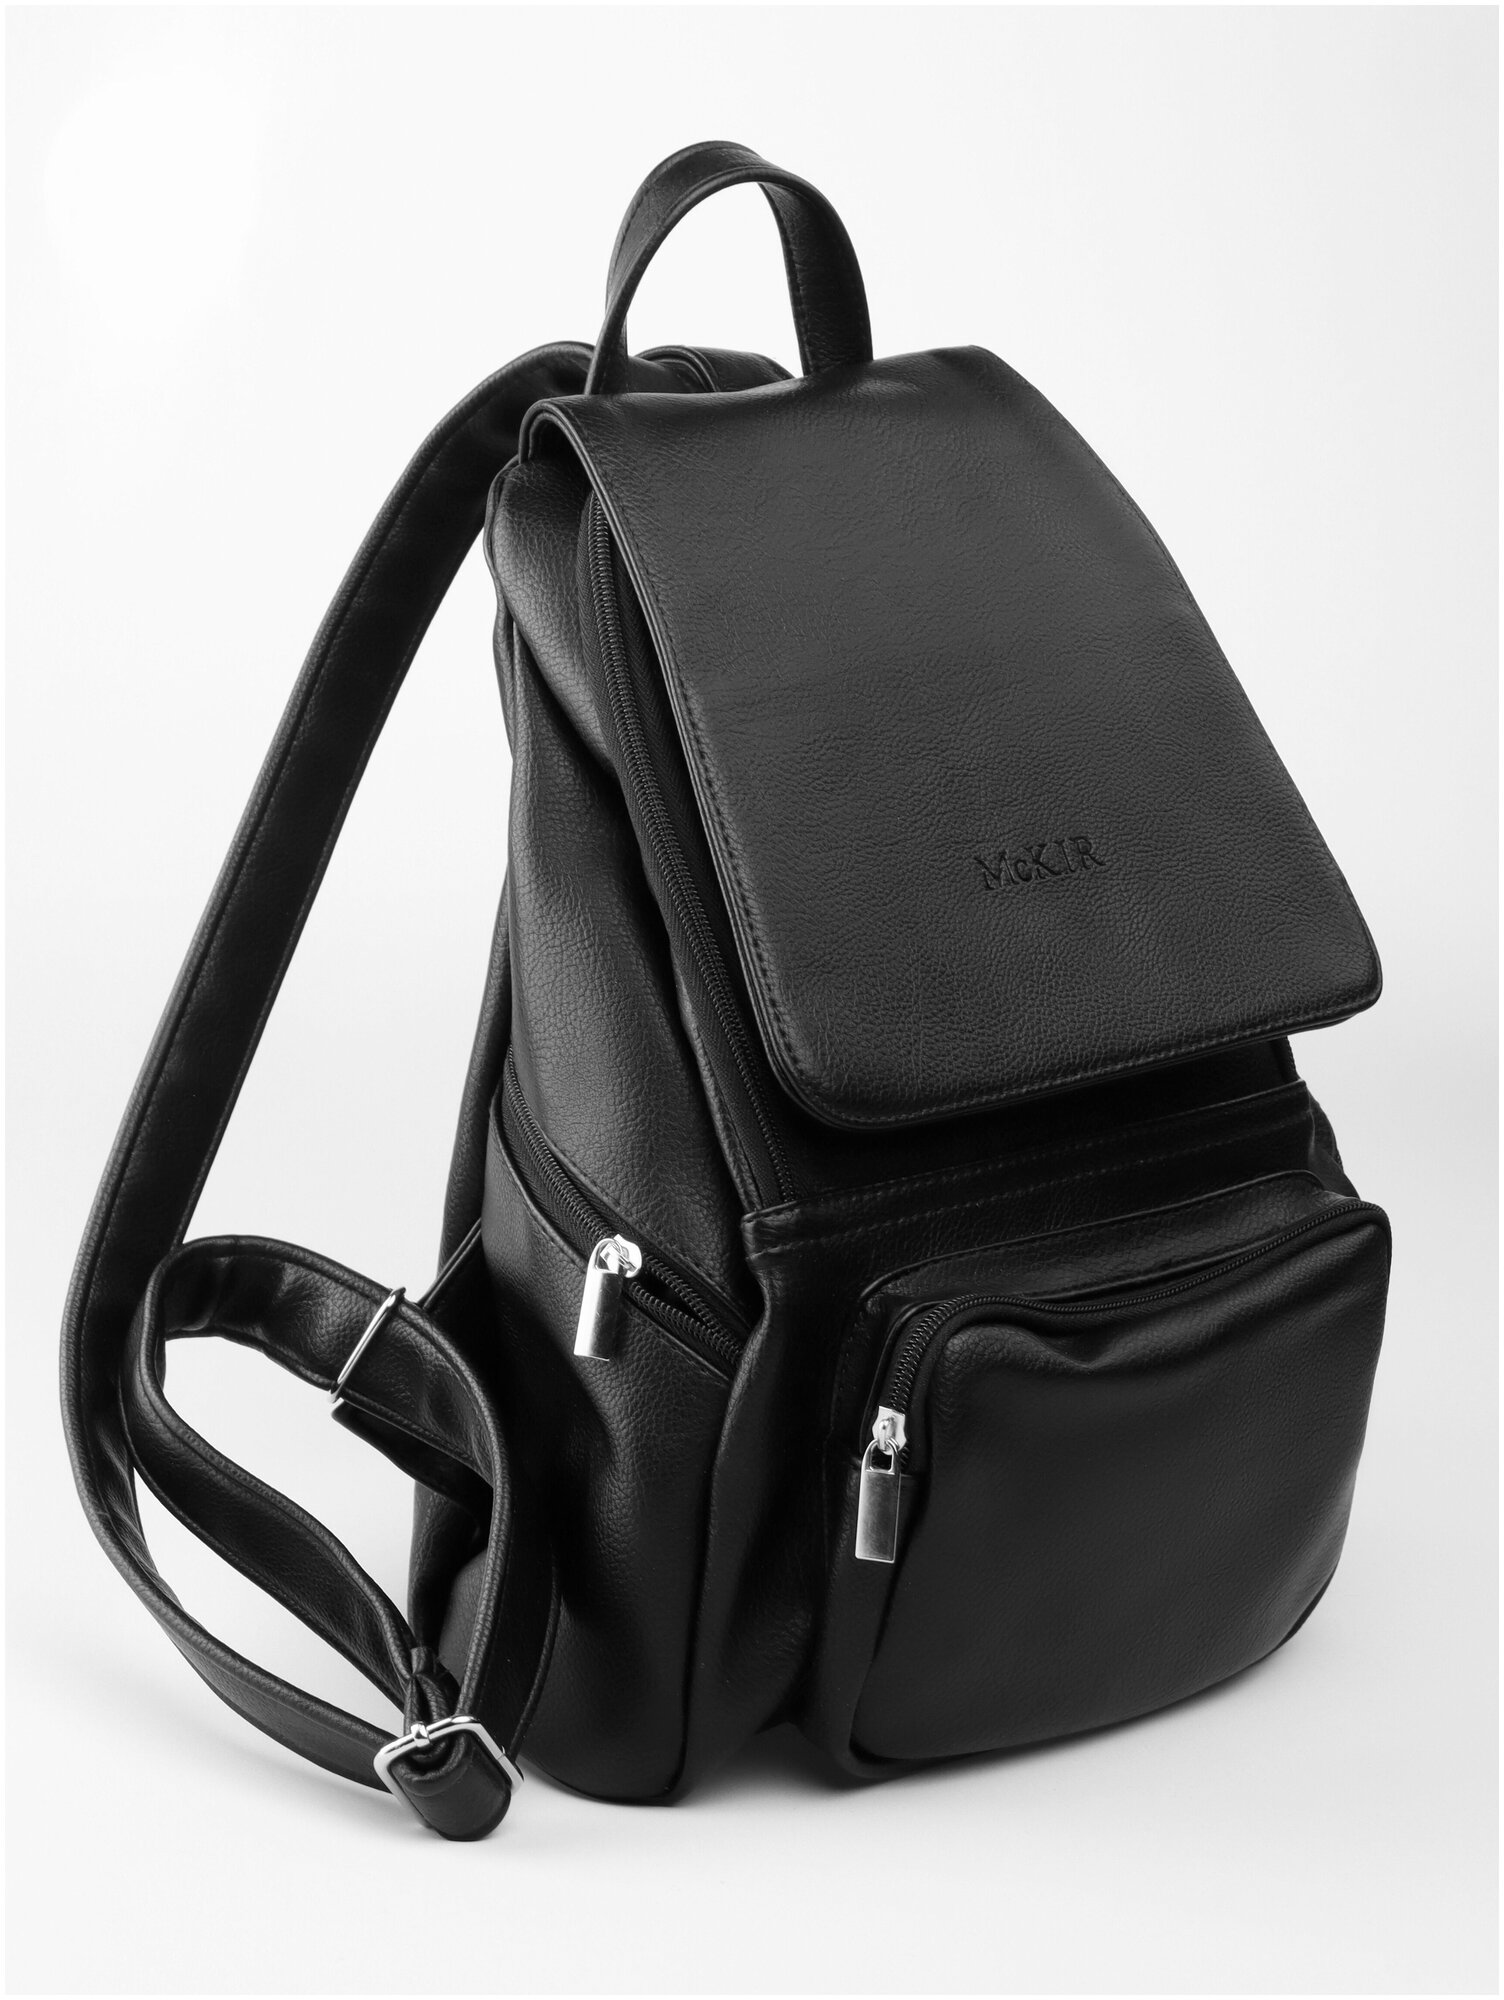 Городской рюкзак / кожаный рюкзак из экокожи / женский / стильный McKIR 21-87 экокожа